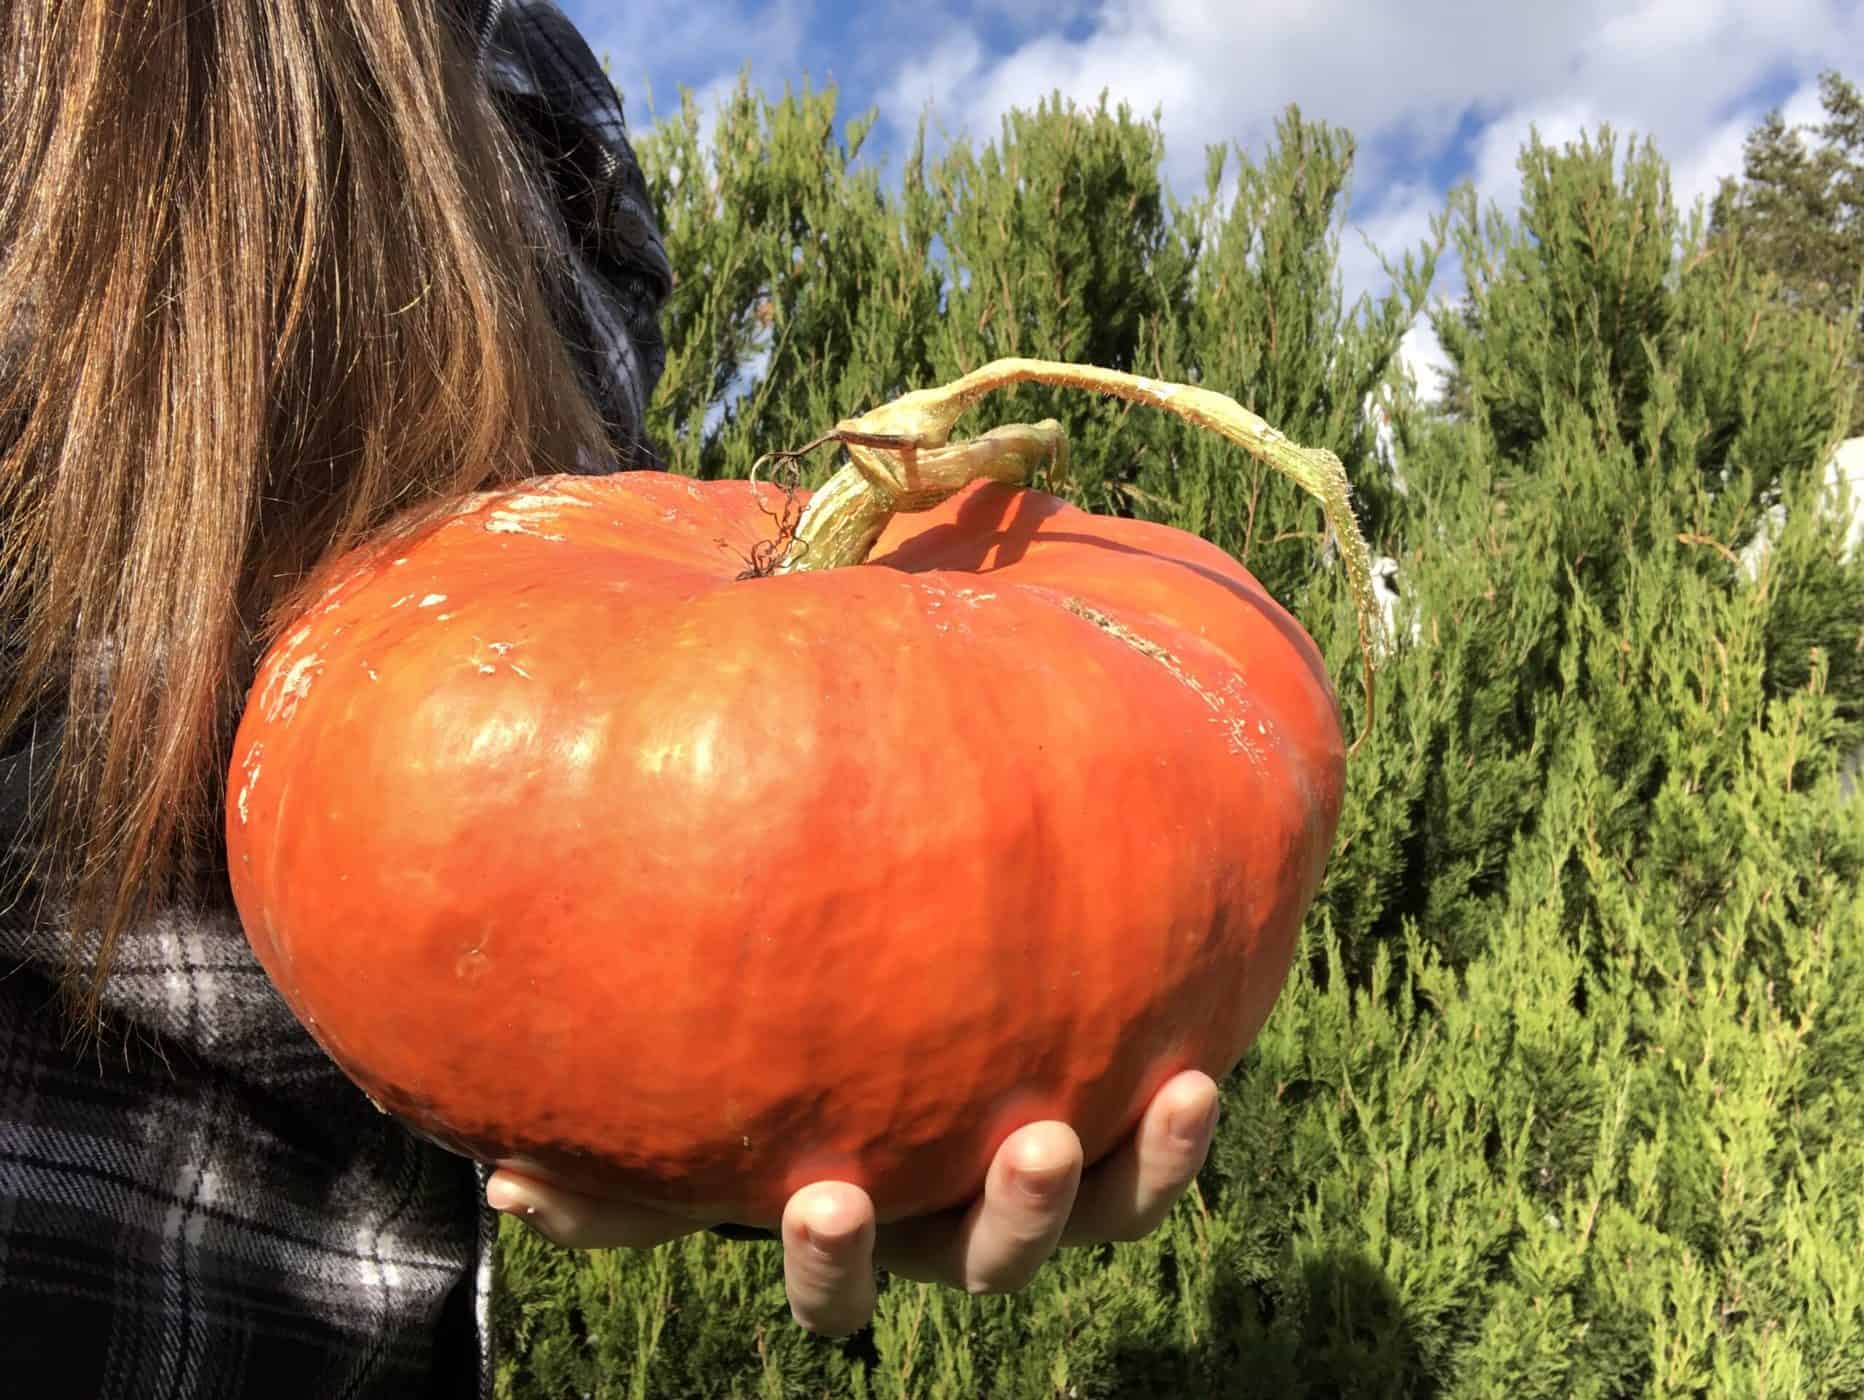 cinderella pumpkin held in hand